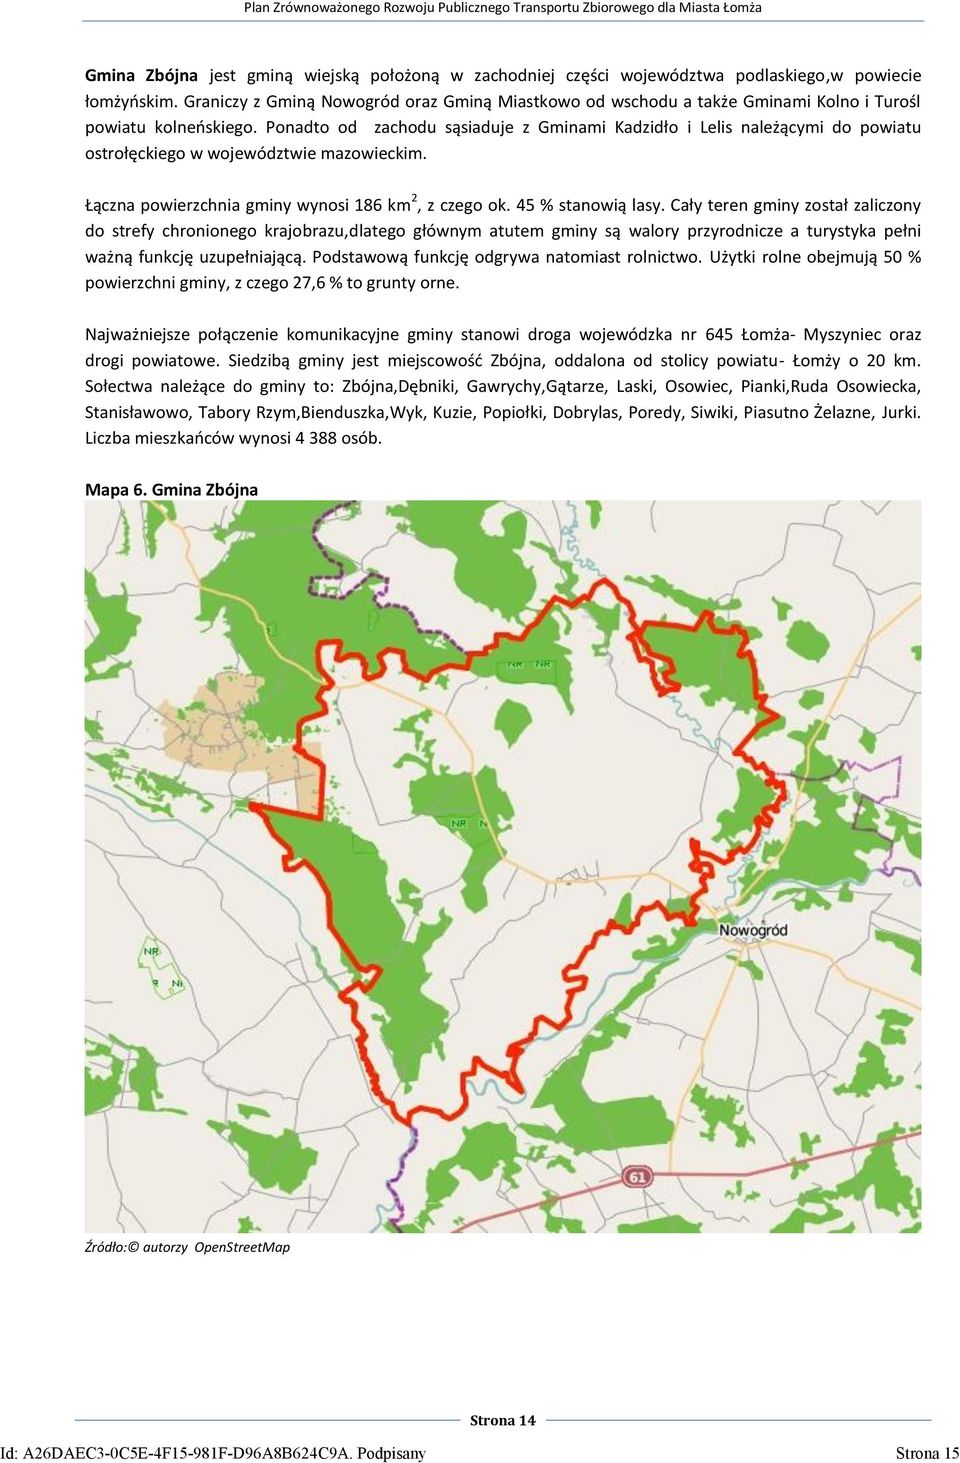 Ponadto od zachodu sąsiaduje z Gminami Kadzidło i Lelis należącymi do powiatu ostrołęckiego w województwie mazowieckim. Łączna powierzchnia gminy wynosi 186 km 2, z czego ok. 45 % stanowią lasy.